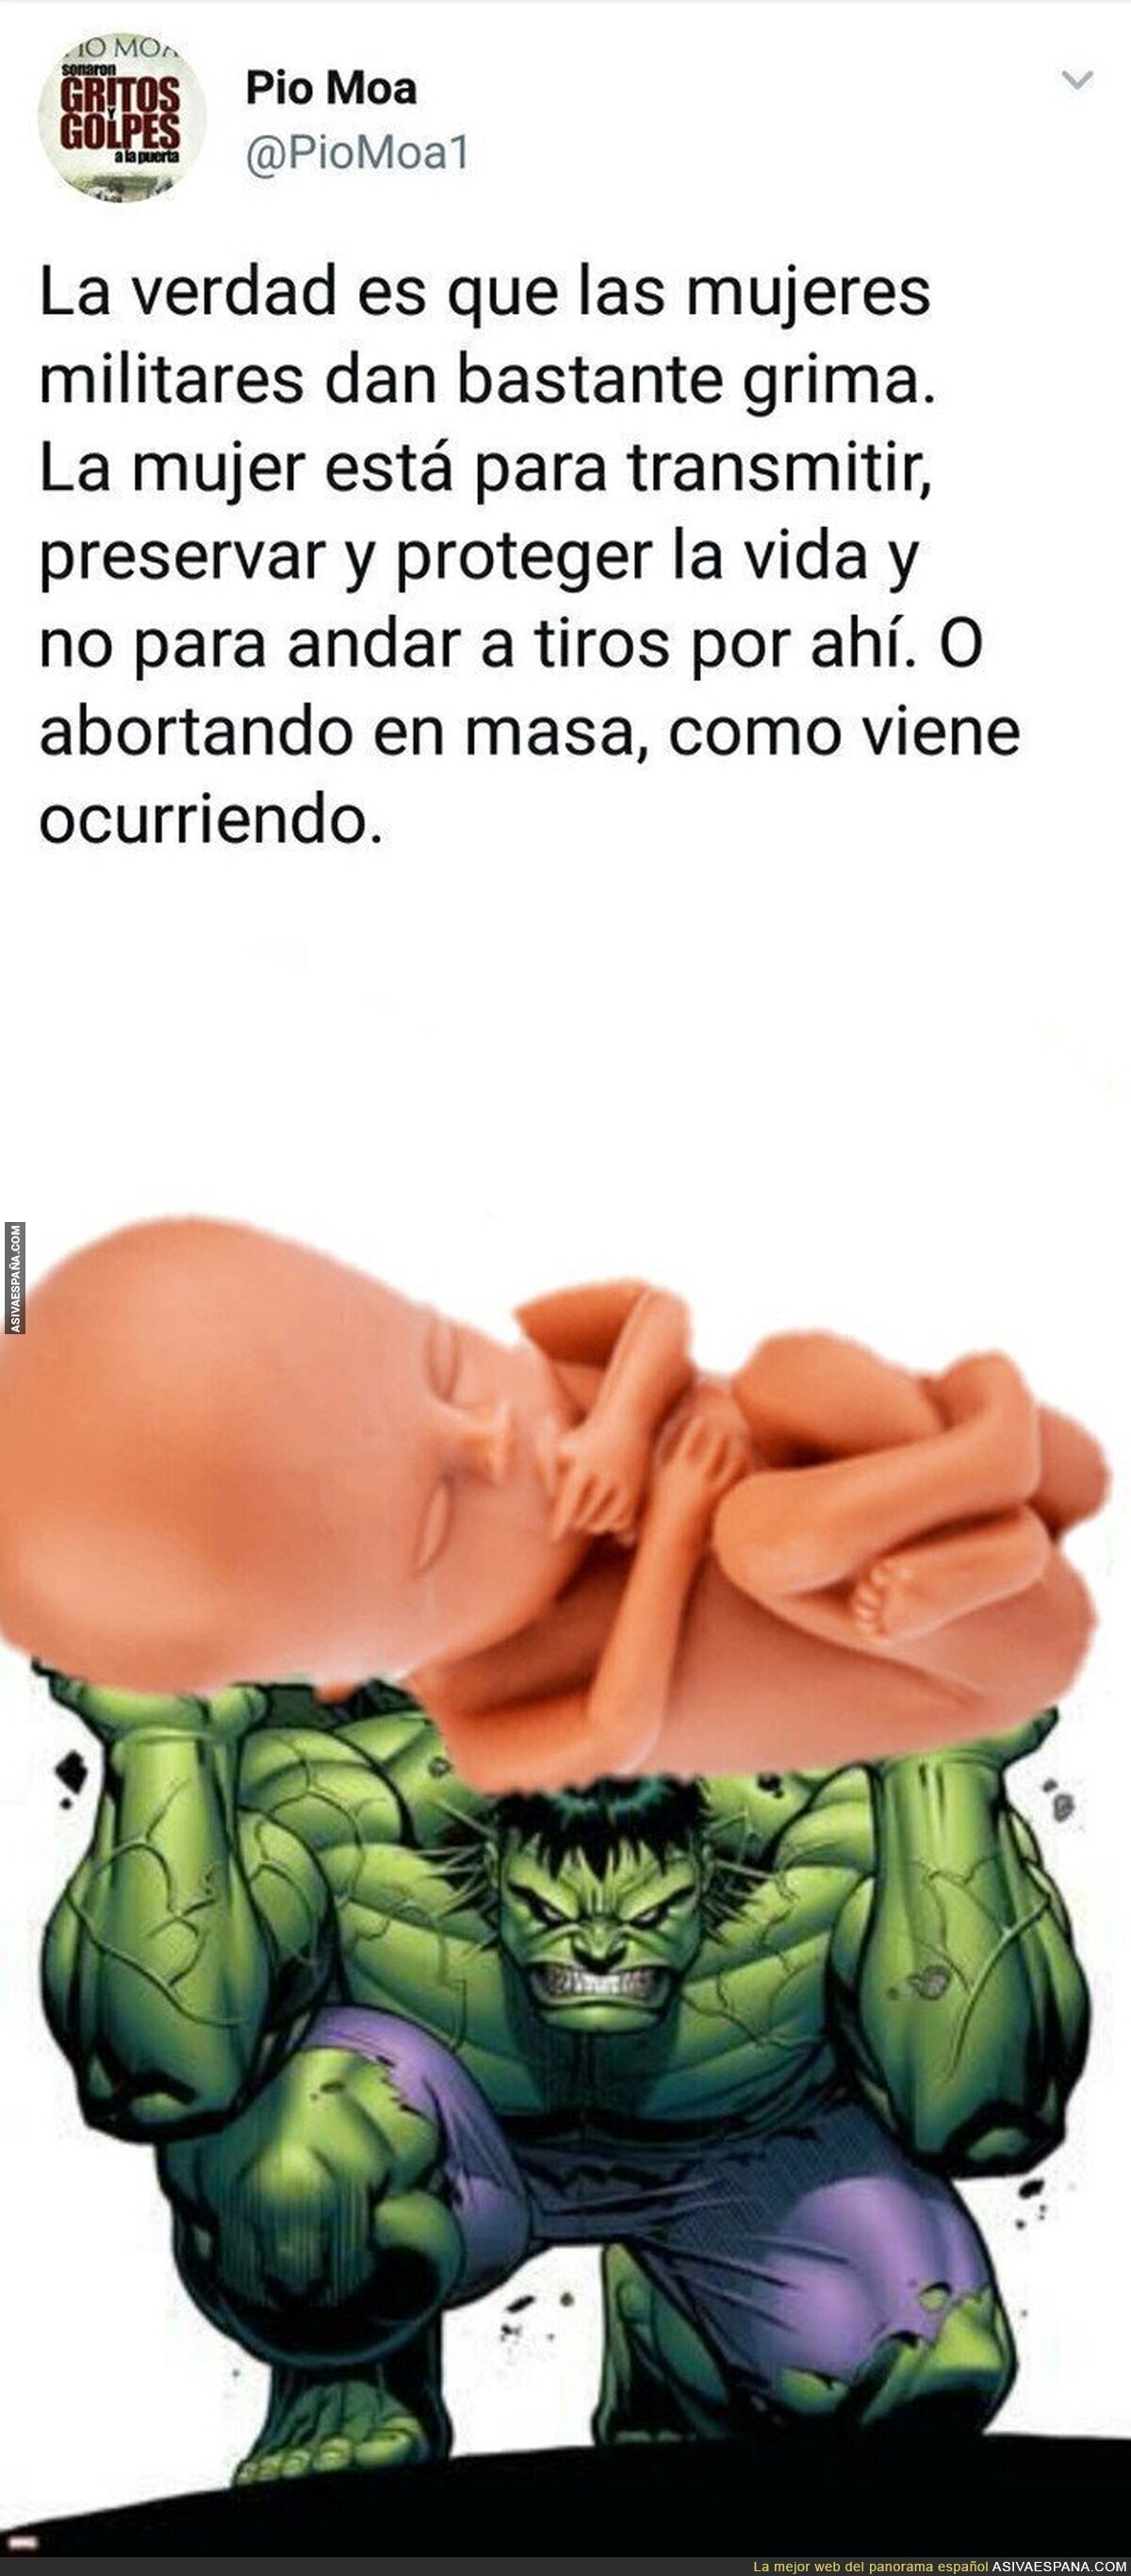 Aborto en masa